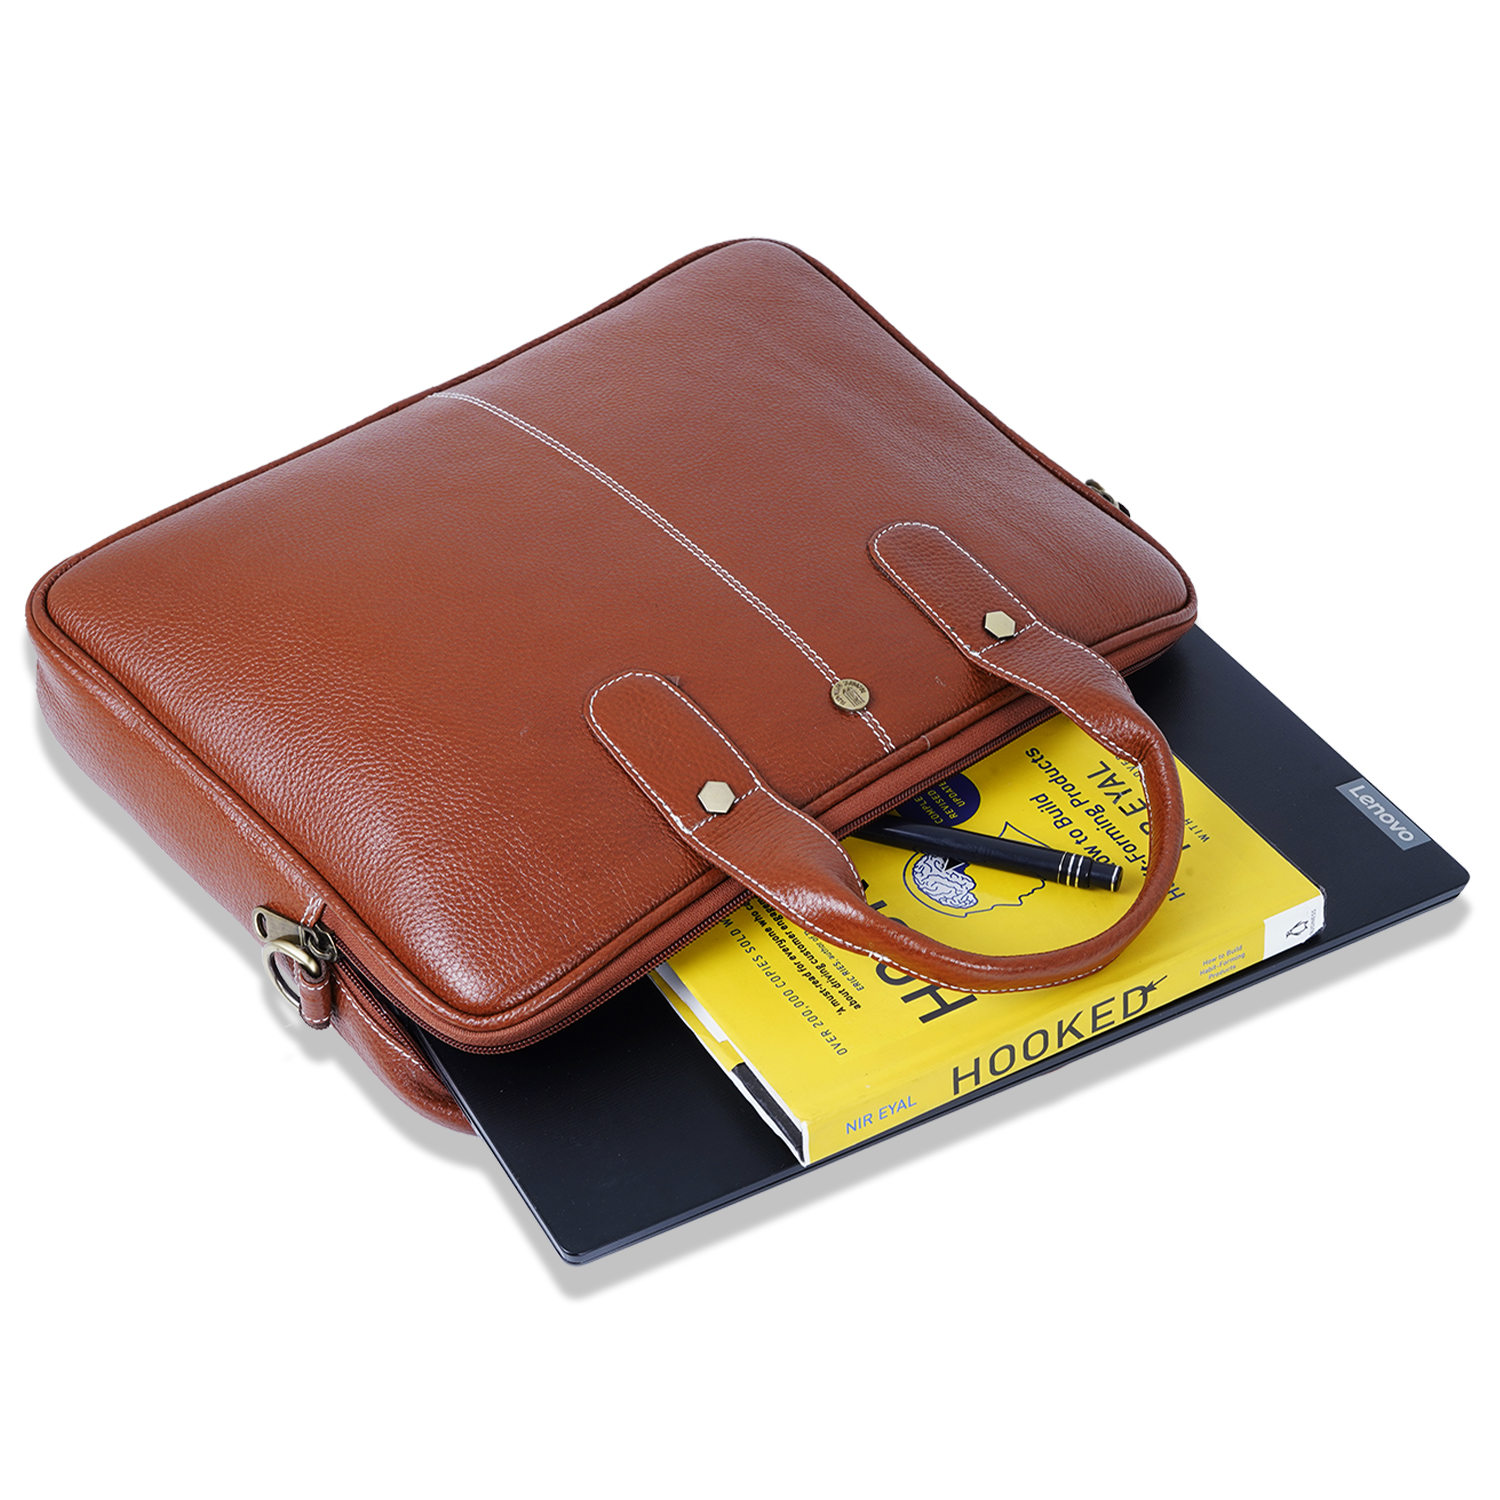  Laptop Messenger Bag for Men | MacBook| Tan